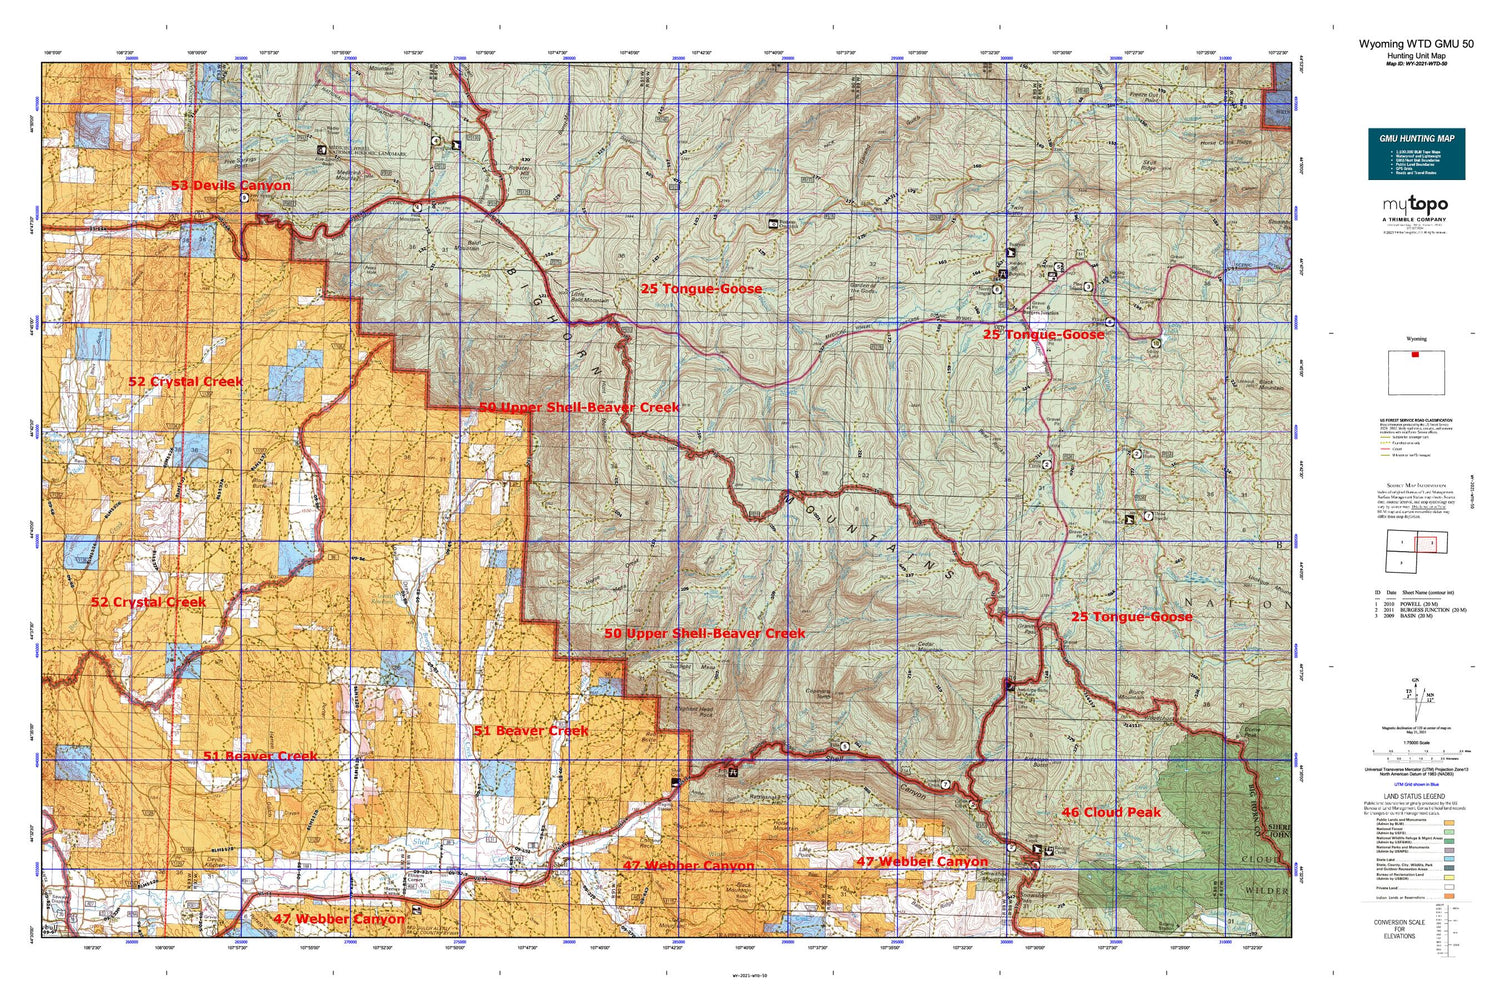 Wyoming Whitetail Deer GMU 50 Map Image